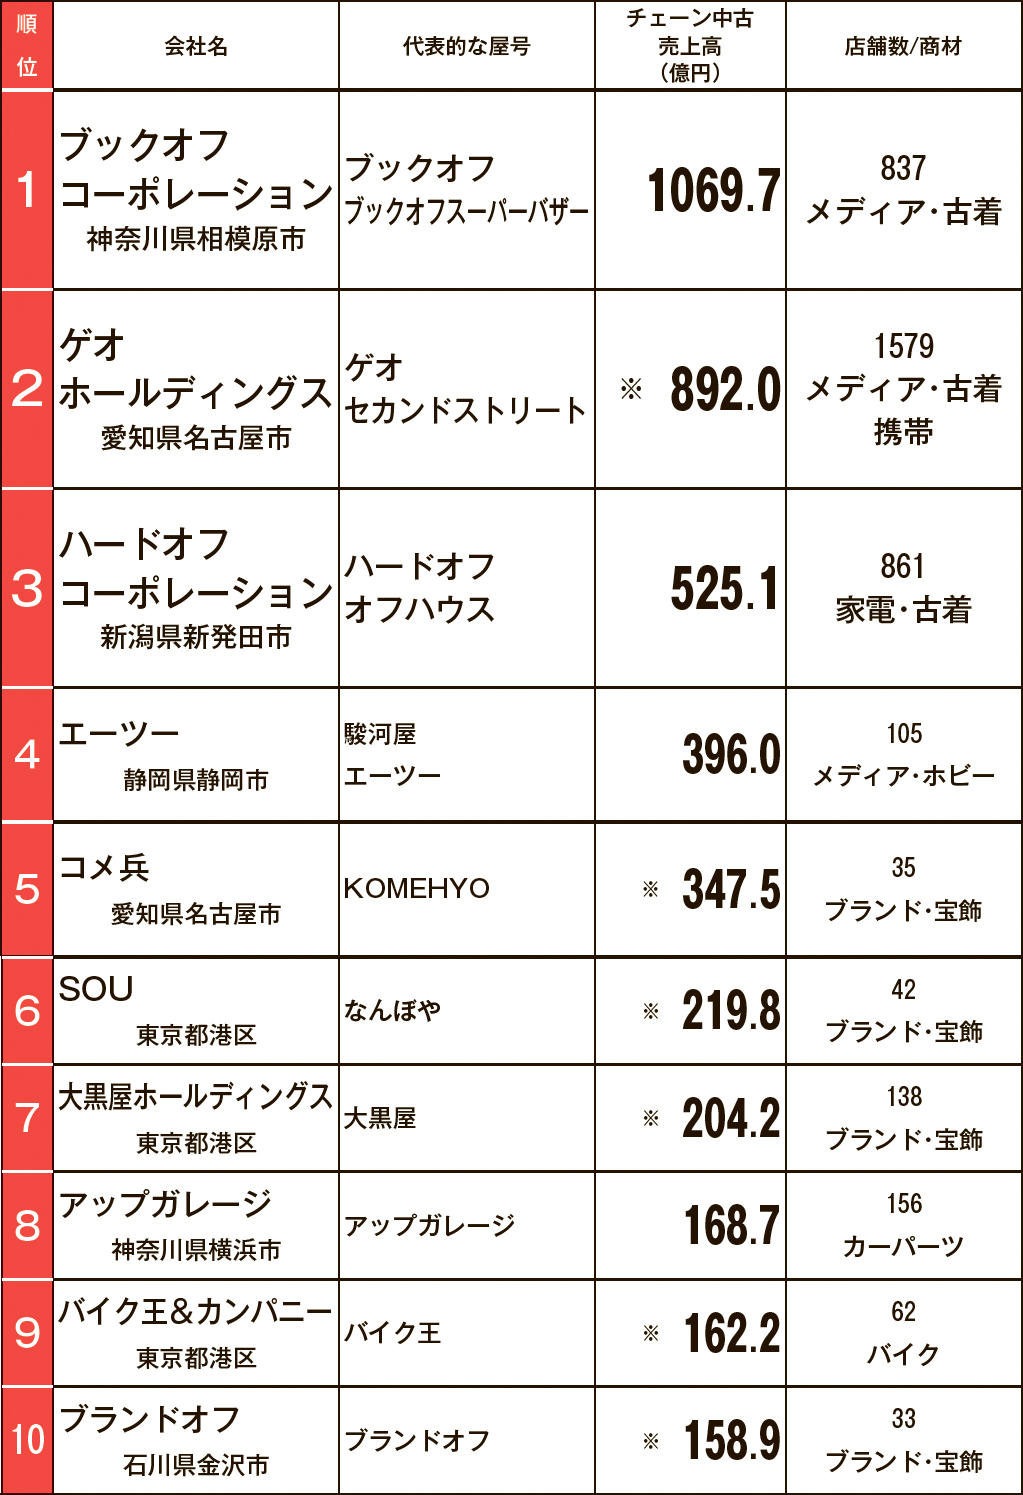 チェーン中古売上ランキング Bo ゲオ Hoの3強変わらず トップ10合計売上4144 2億円 リサイクル通信